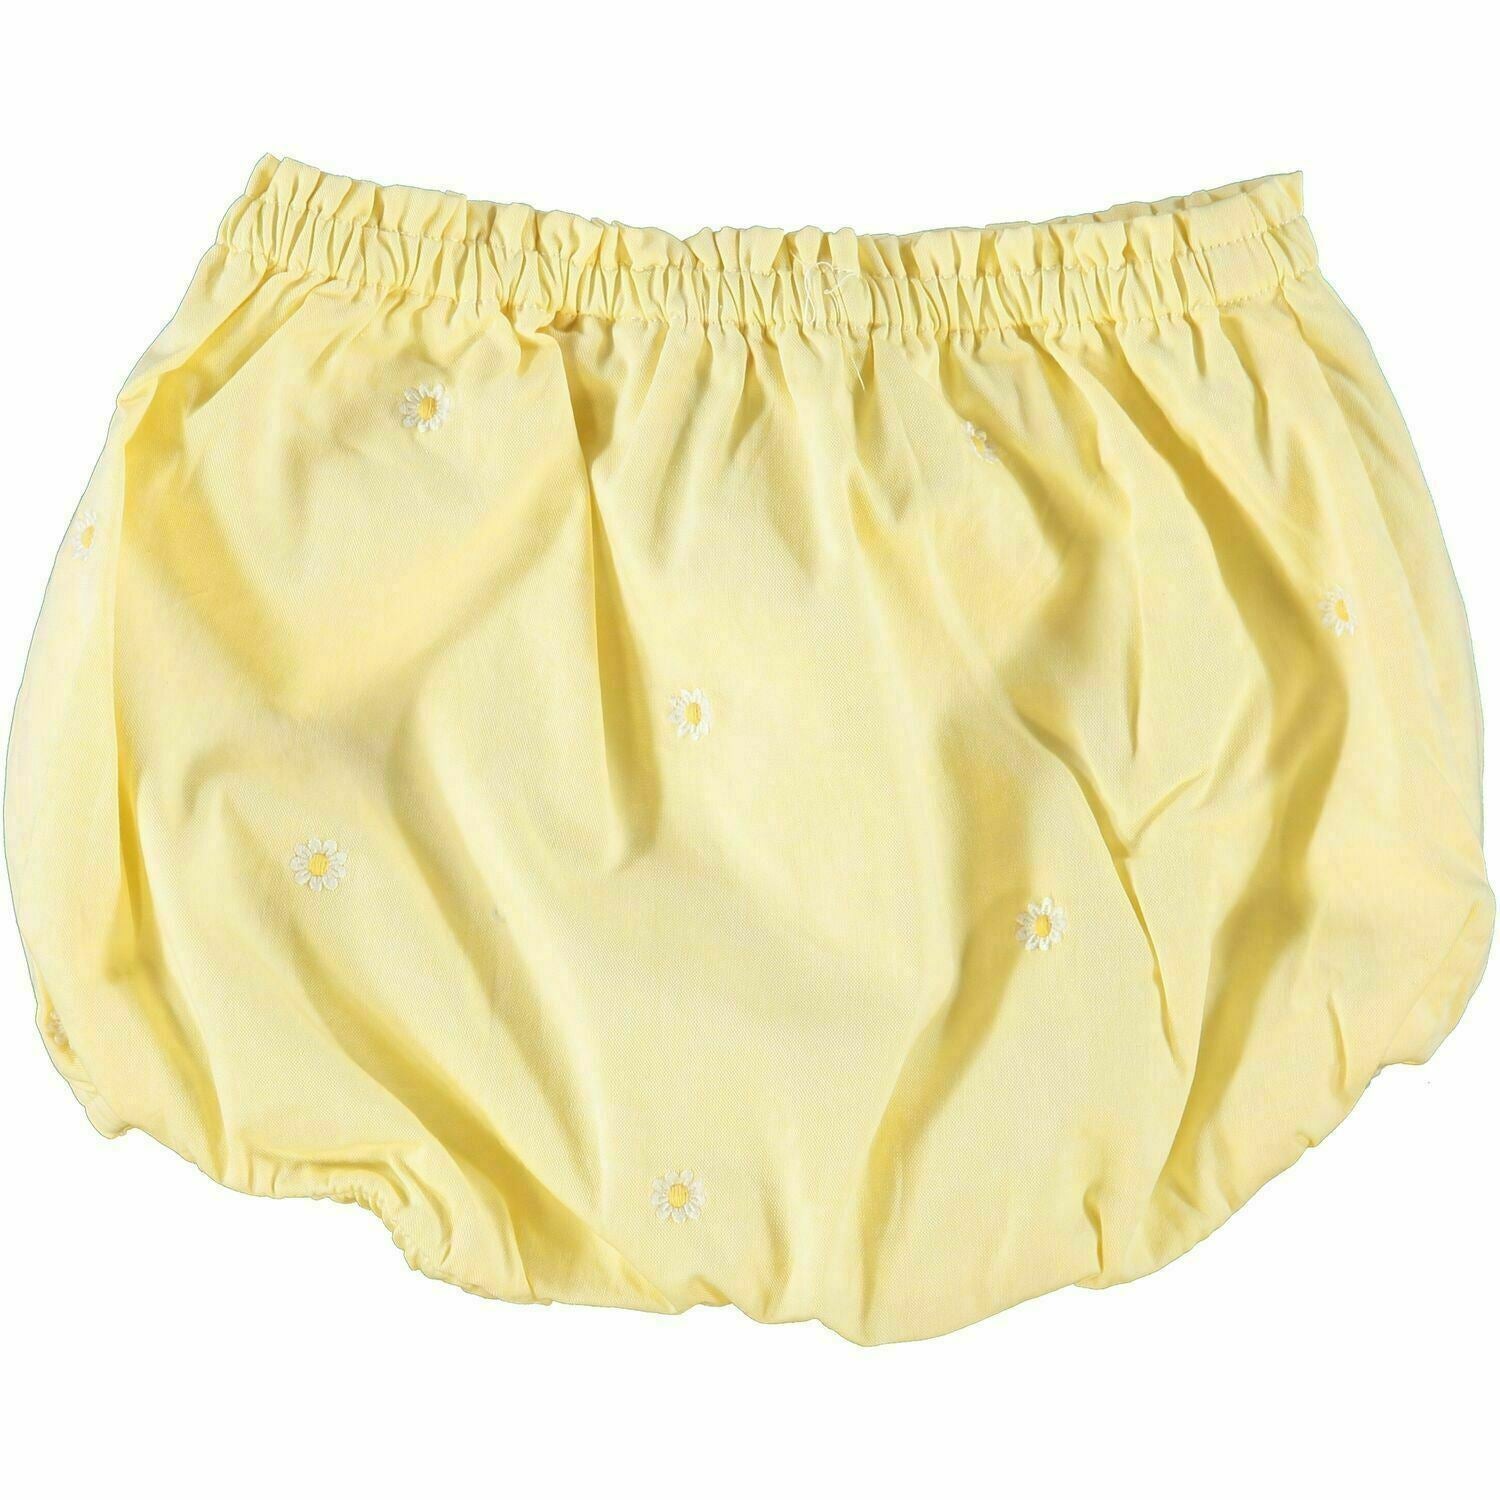 RALPH LAUREN Baby Girls' Yellow Daisy Shorts, size 12 months